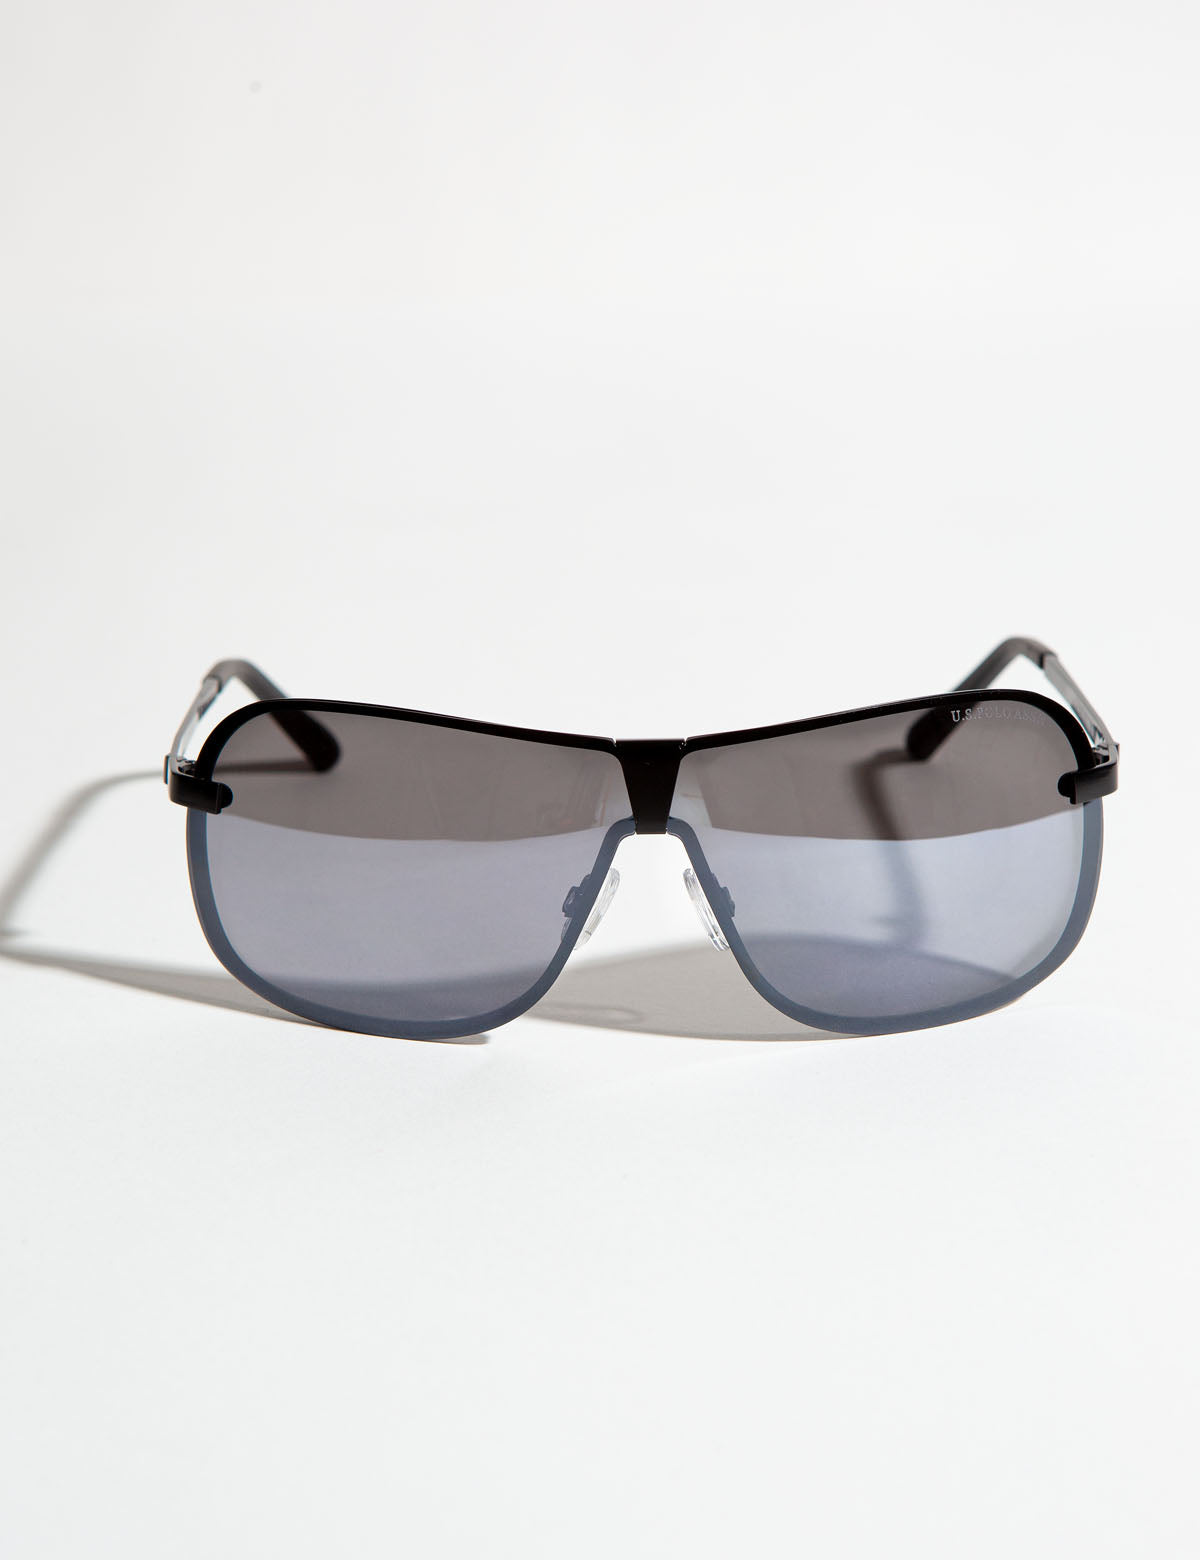 Share 200+ us polo sunglasses latest